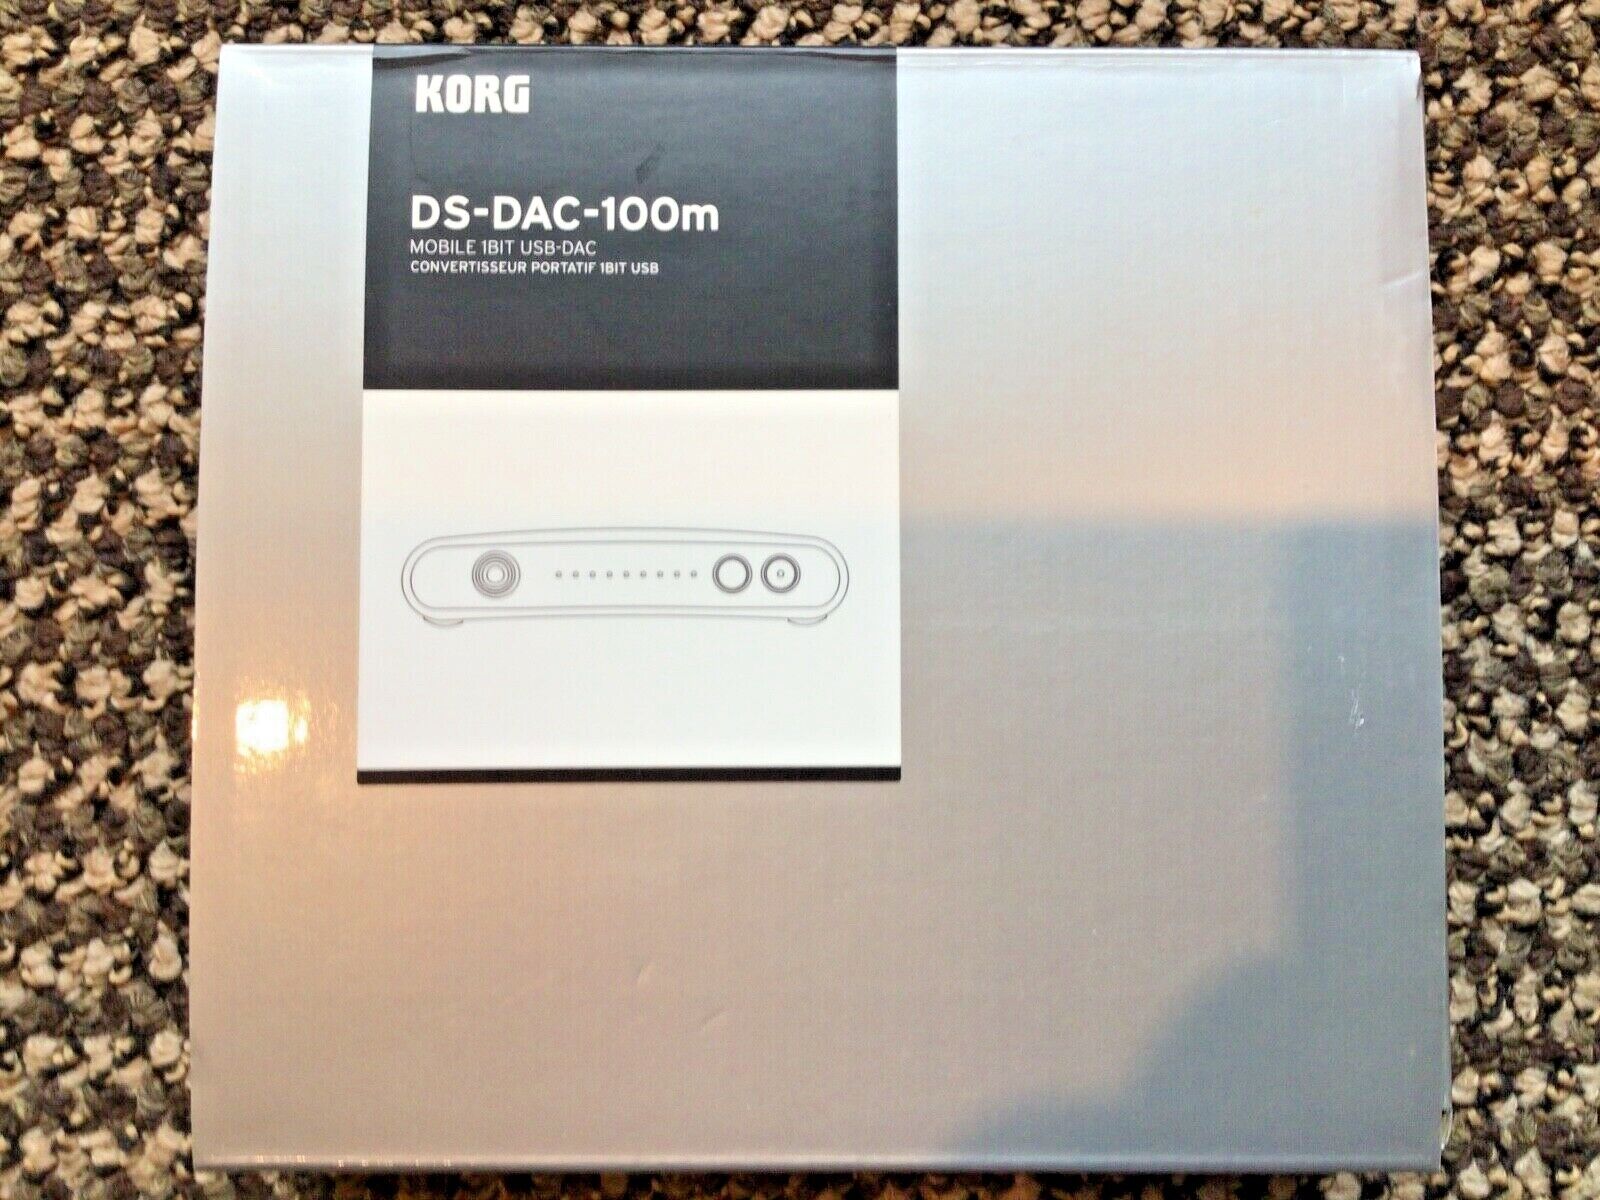 Korg 1bit Usb Da Converter Ds Dac 100 From Japan For Sale Online Ebay